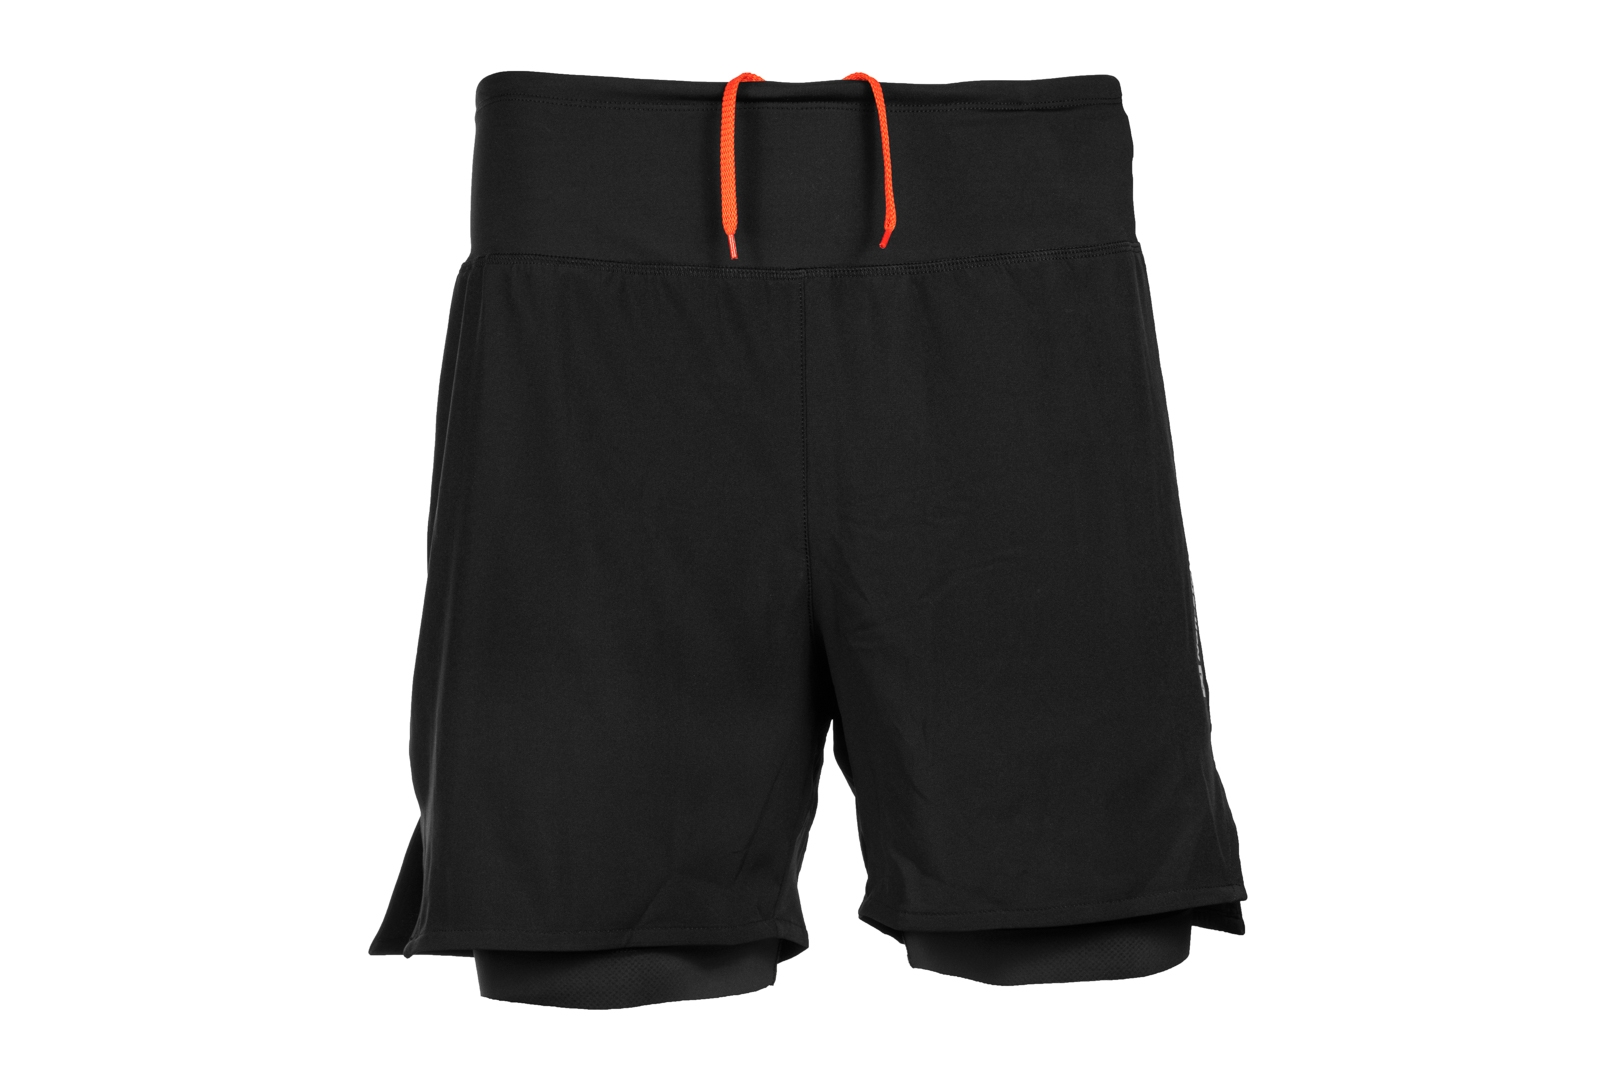 CaniX twin shorts men's